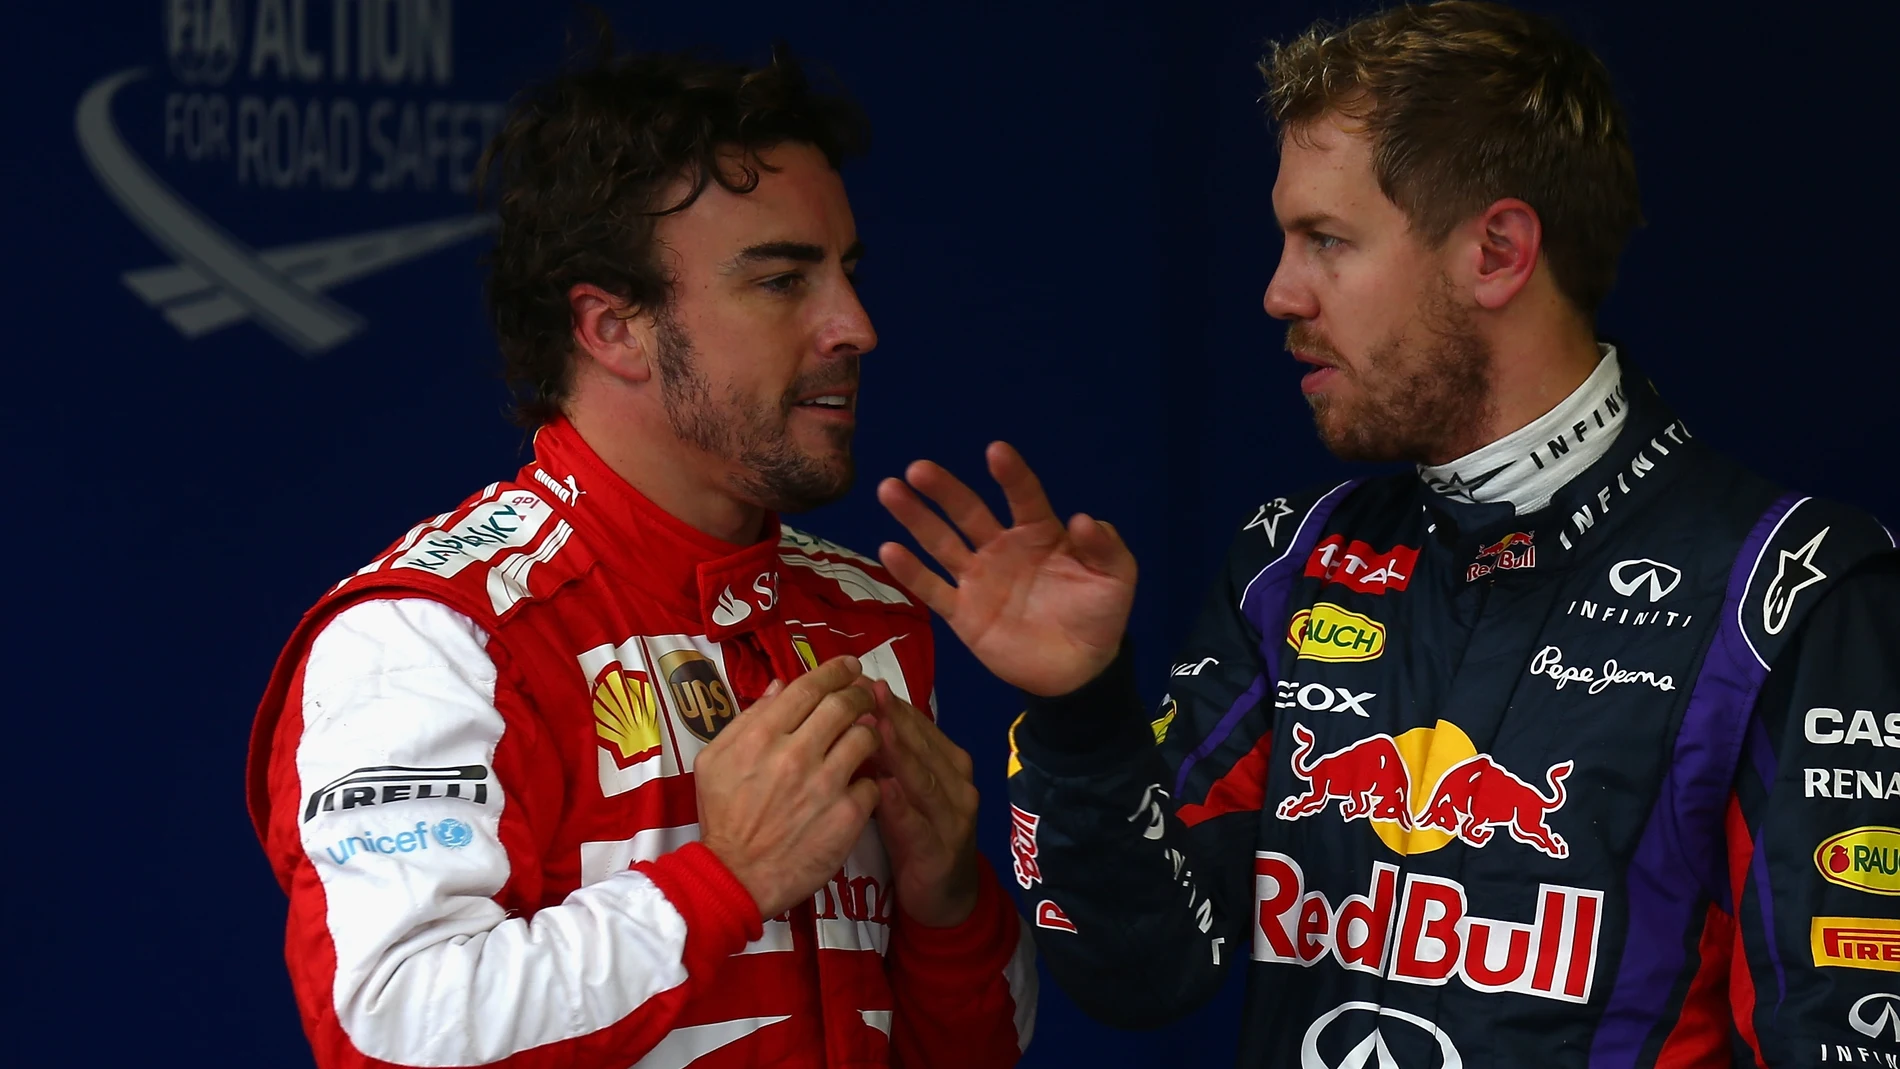 Alonso y Vettel en Interlagos